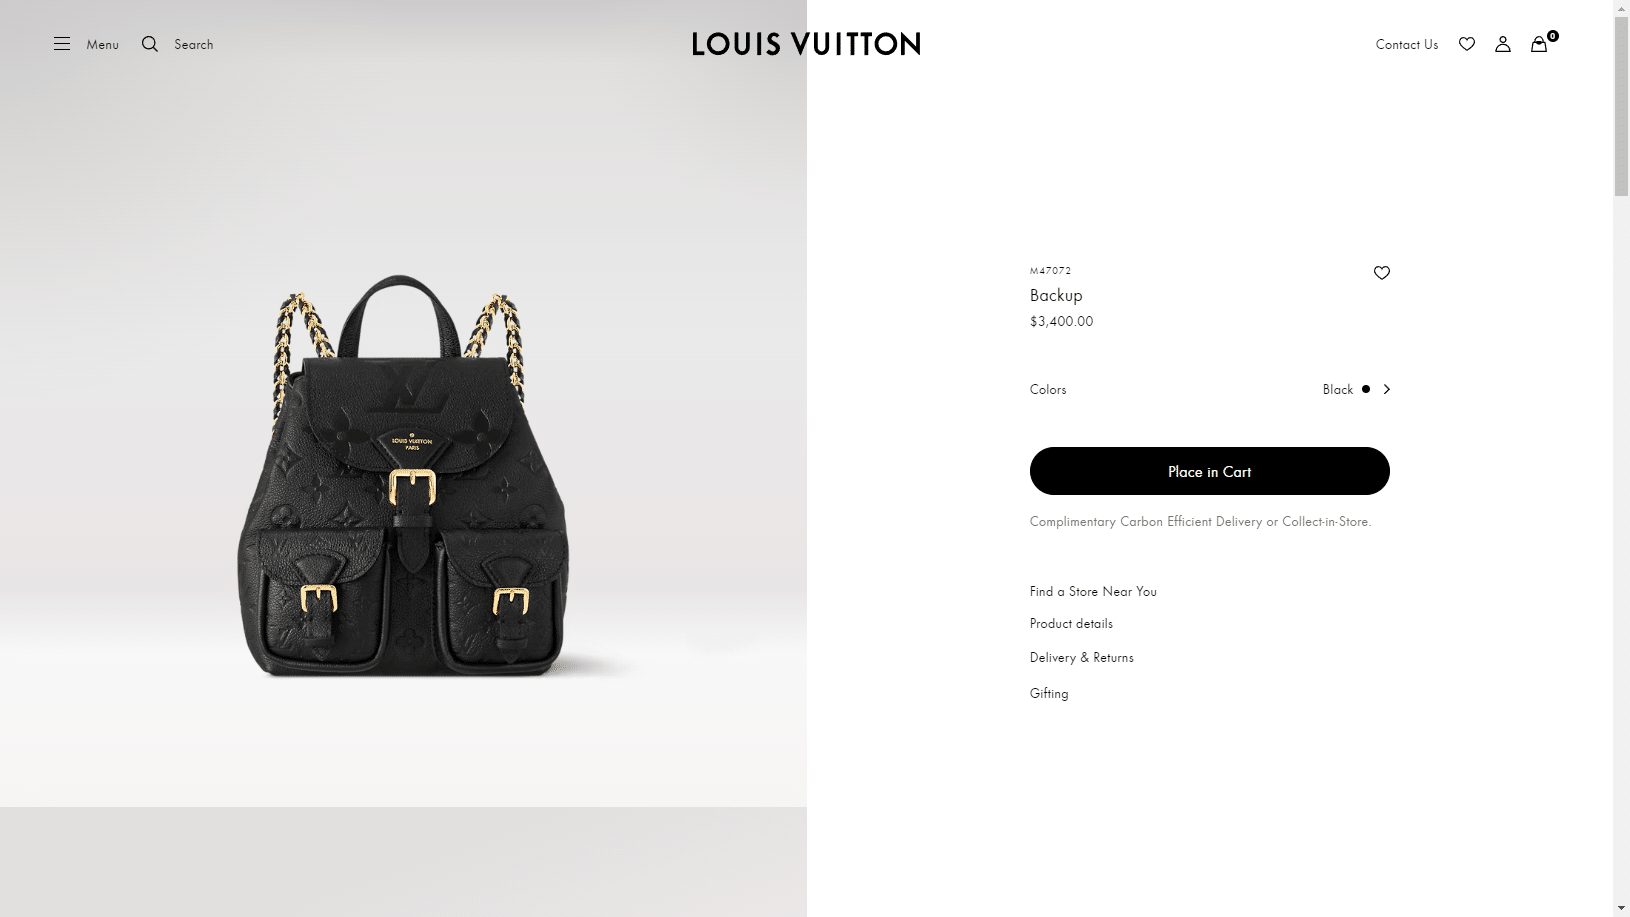 Backup-Monogram-Empreinte-Leather-Women-Handbags-LOUIS-VUITTON-d5414ddb6d376abd.png